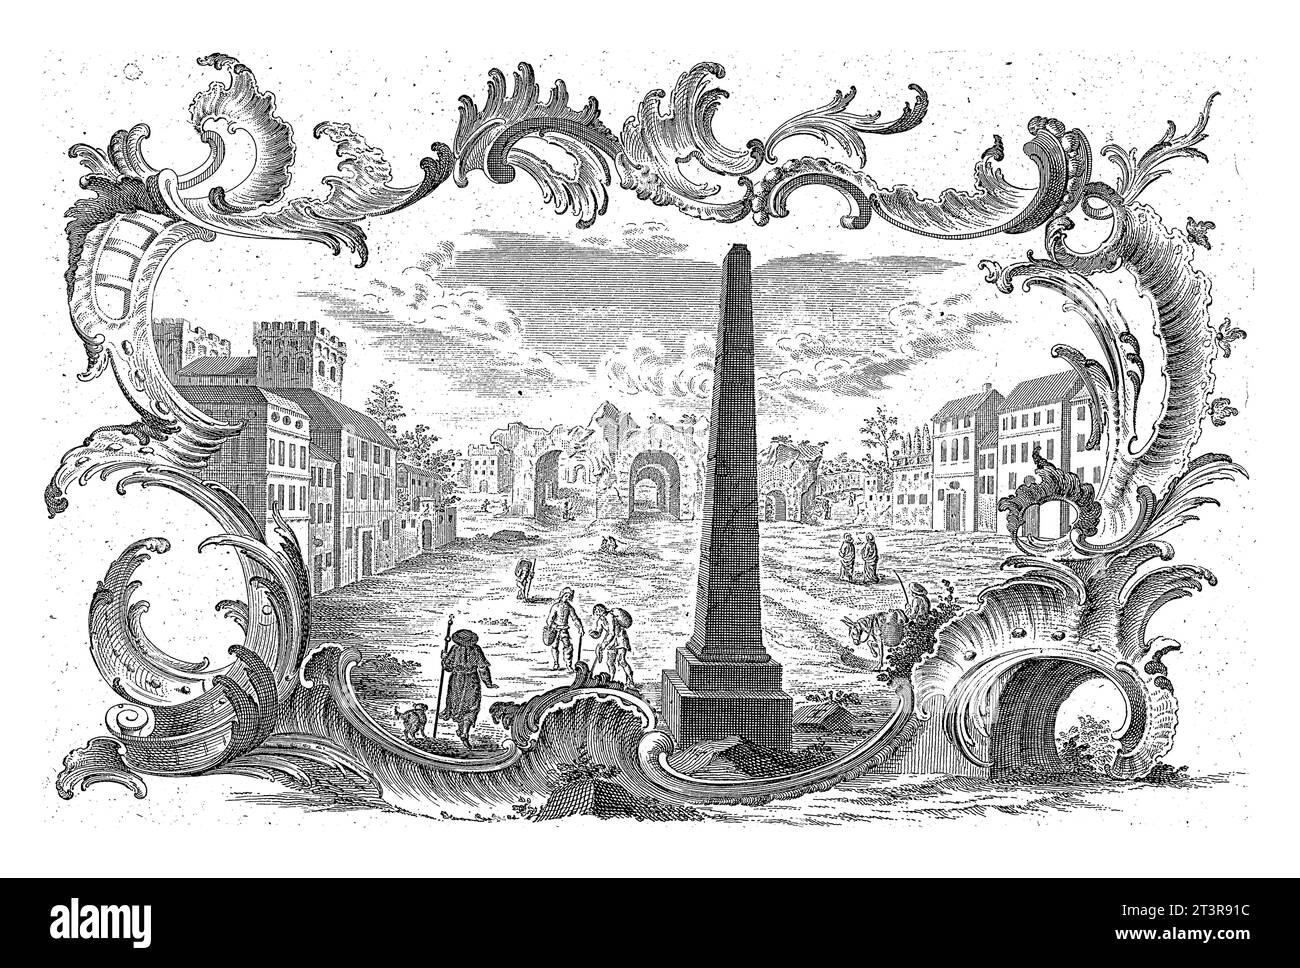 Ruines en cartouche rocaille, Emanuel Eichel, d'après Franz Xaver Habermann, 1731 - 1775 Figures en paysage avec bâtiments, ruines et obélisque. En rocai Banque D'Images